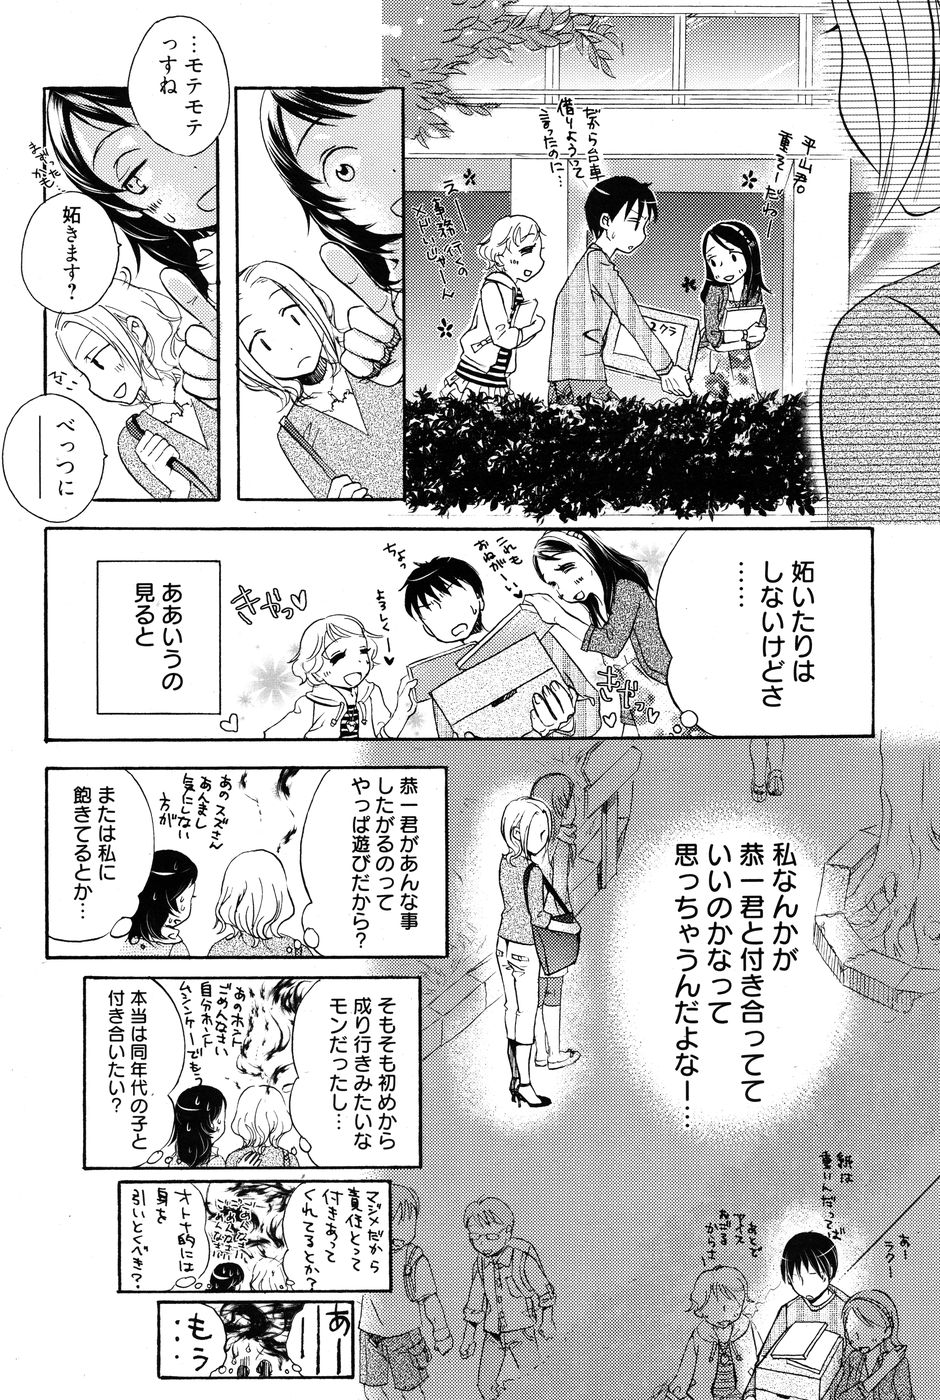 Manga Bangaichi [2010-07] 漫画ばんがいち 2010年07月号